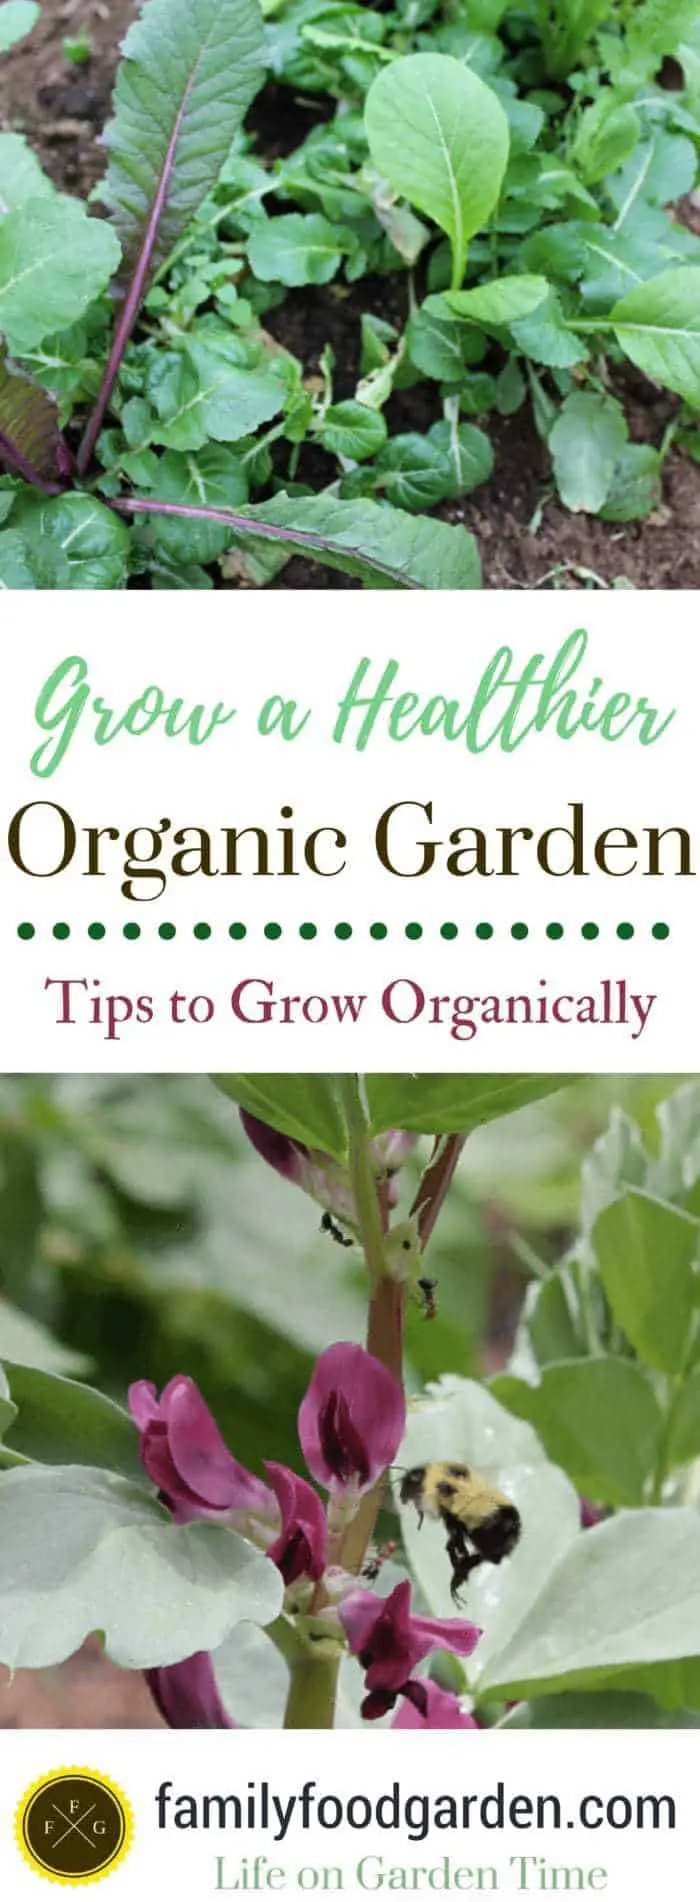 Grow a Healthier Organic Garden: Tips to Grow Organically